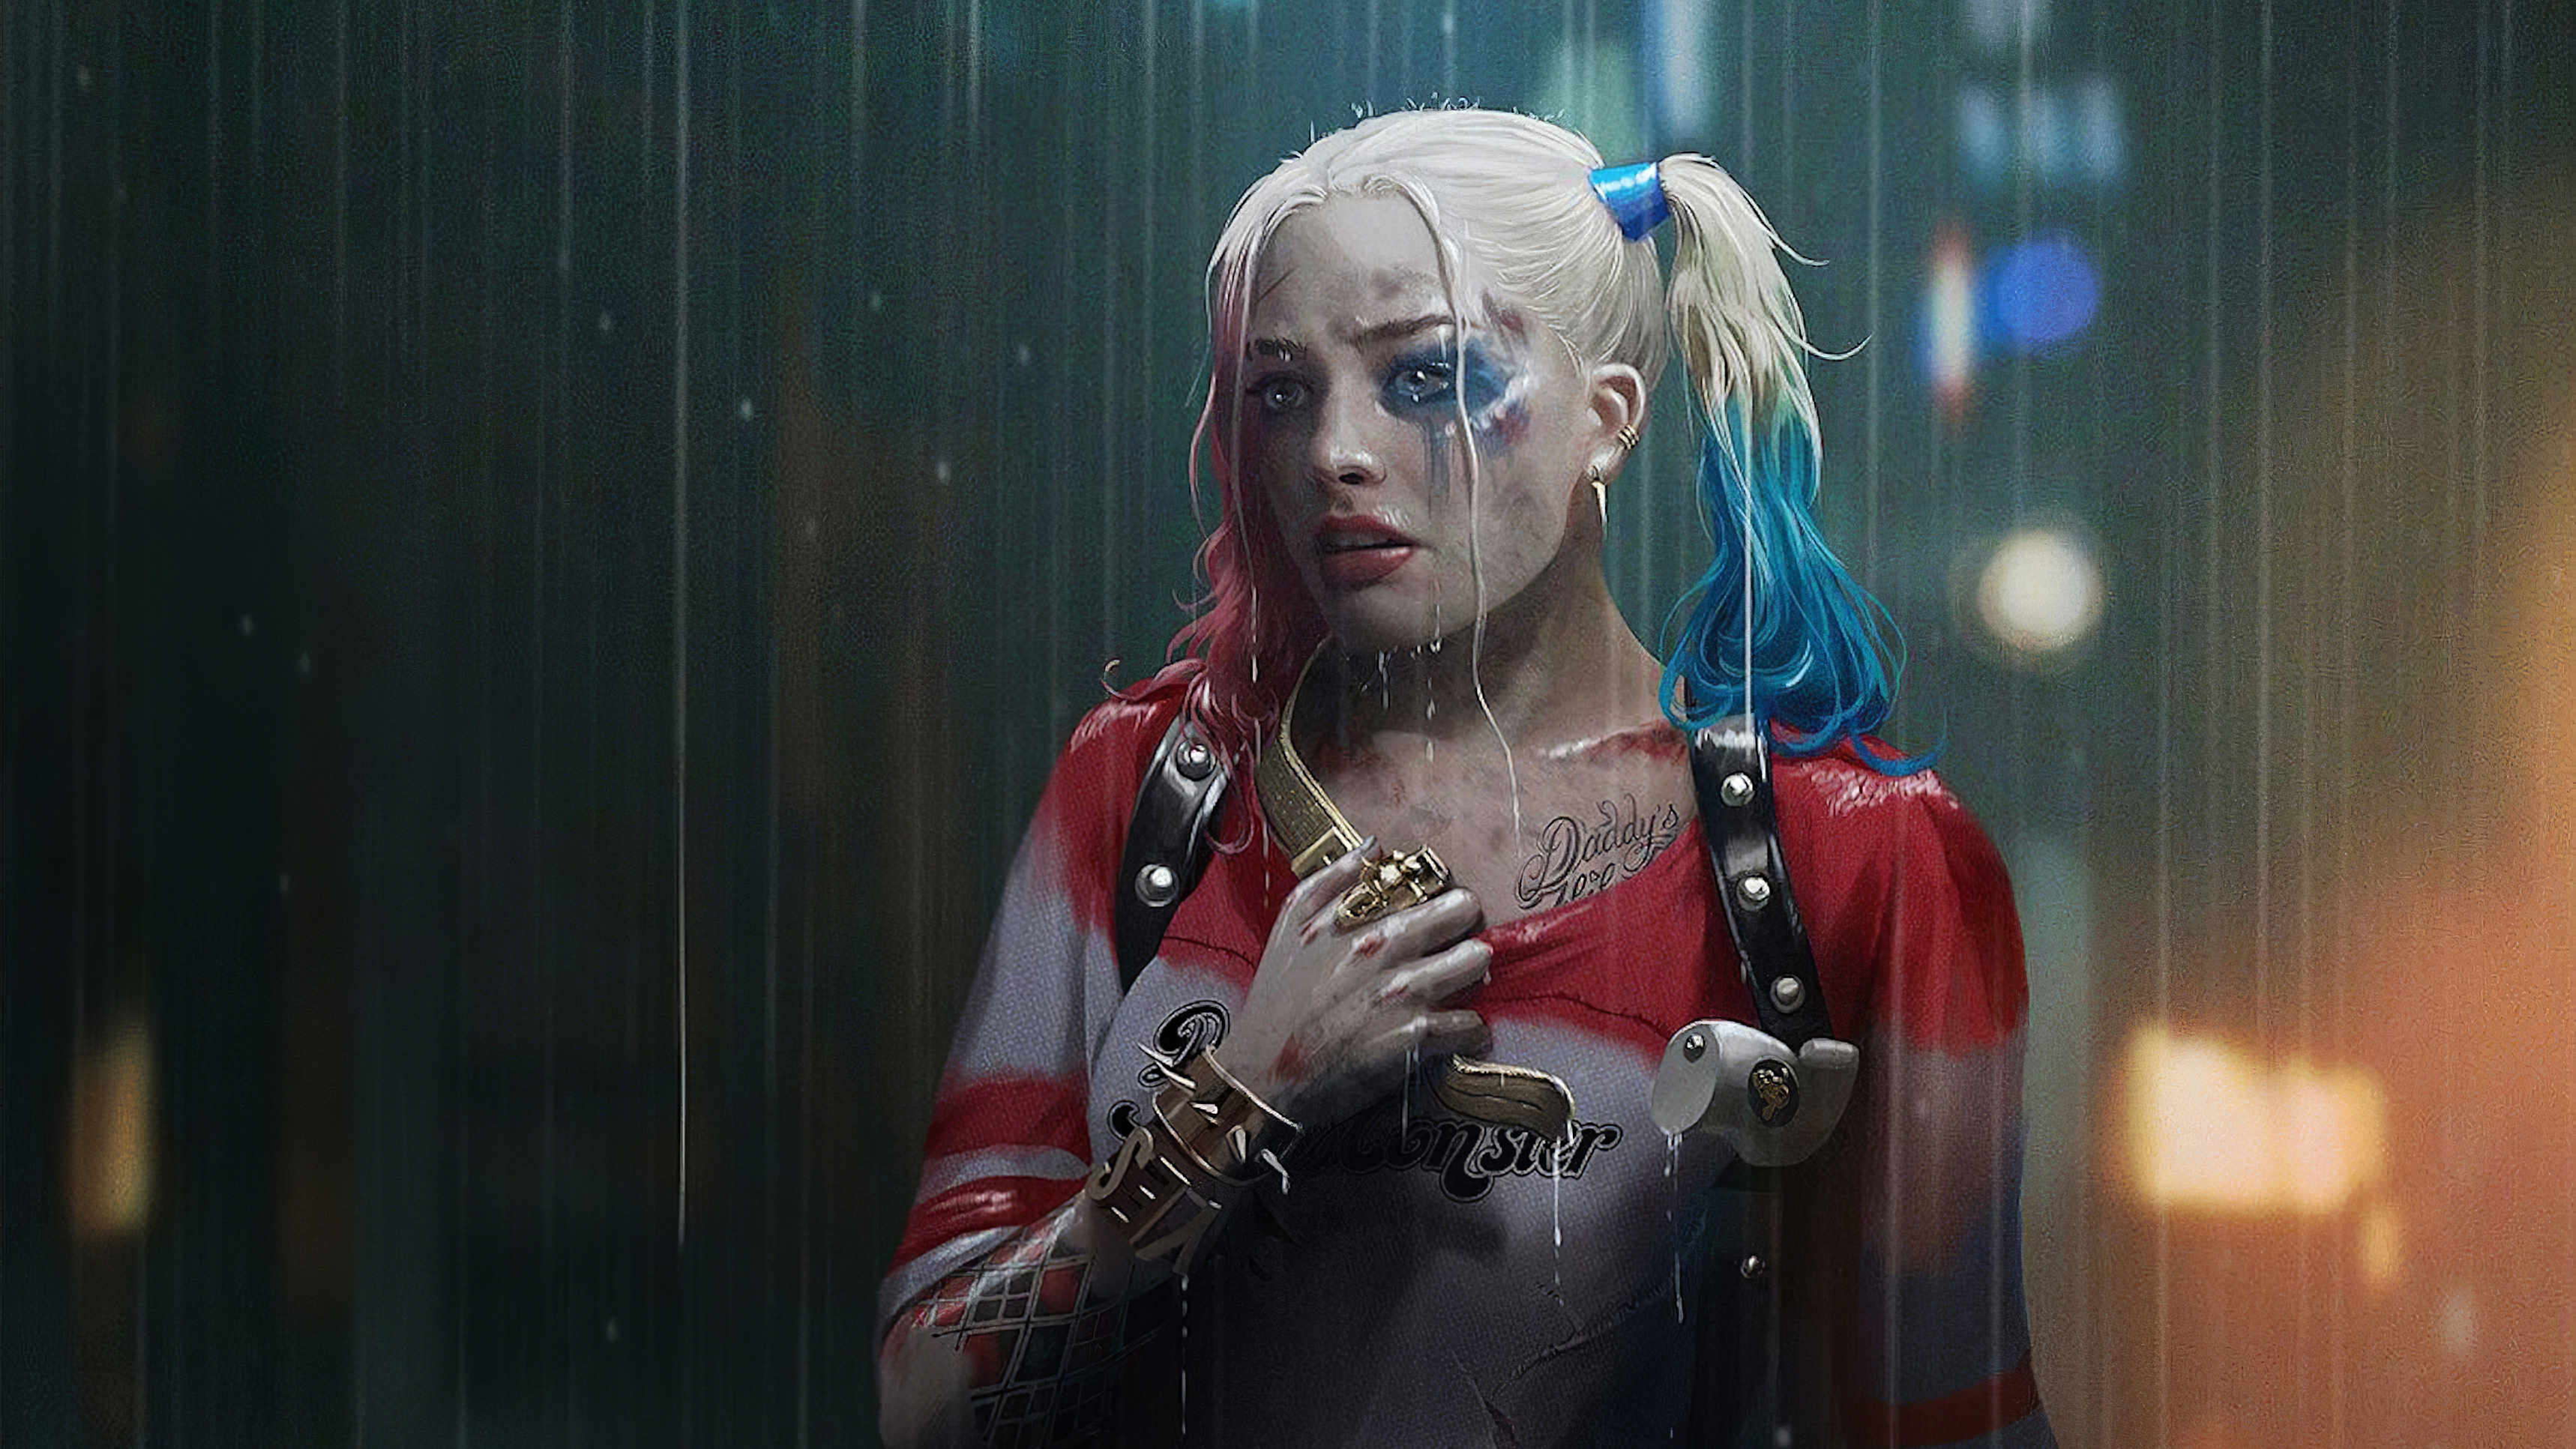 Wallpapers artwork Harley Quinn rain on the desktop